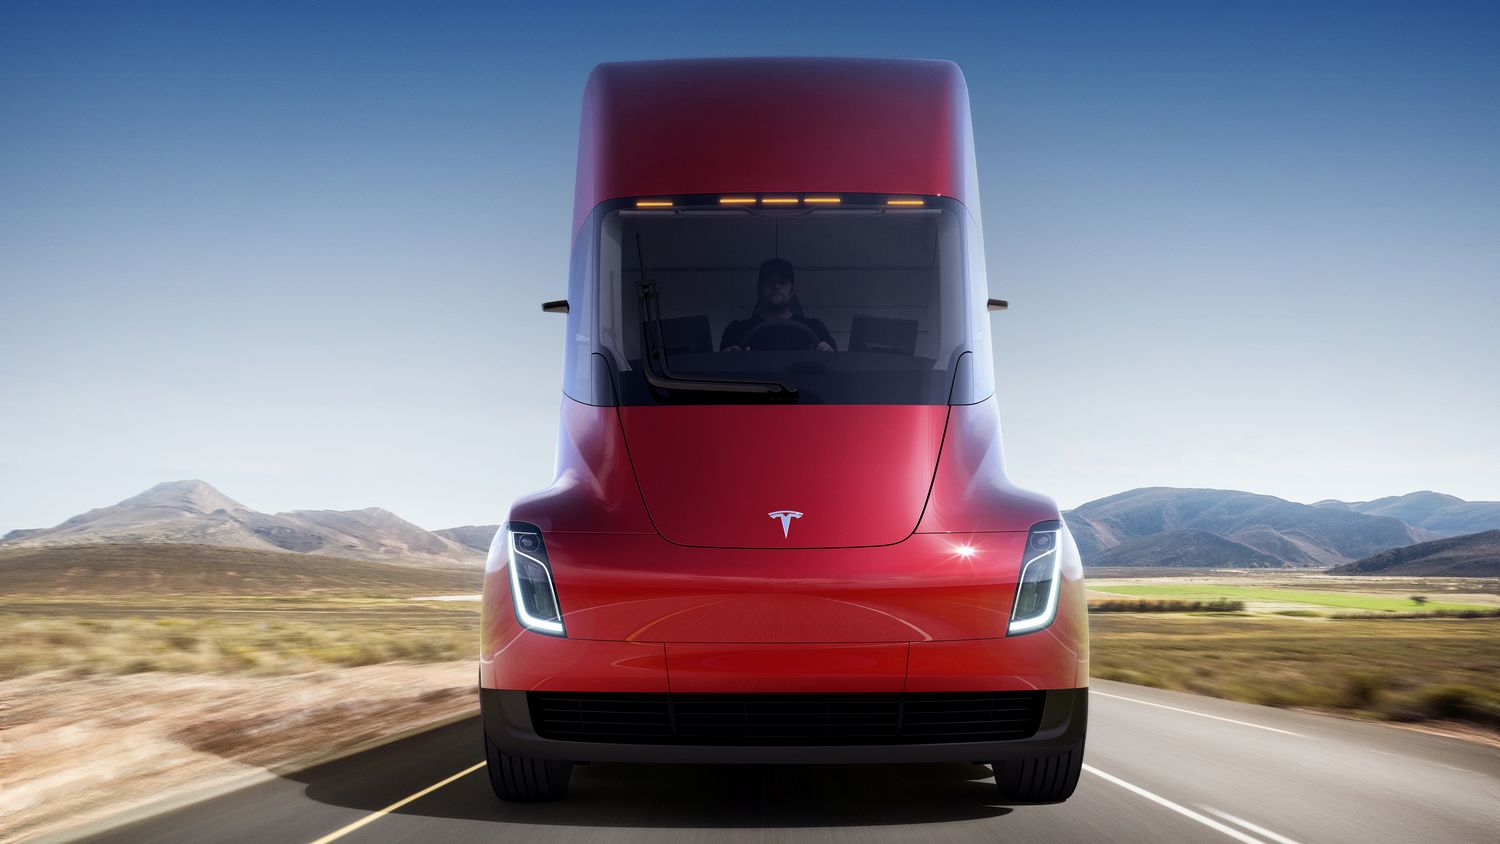 Le Tesla Semi va enfin entrer en production après une longue attente